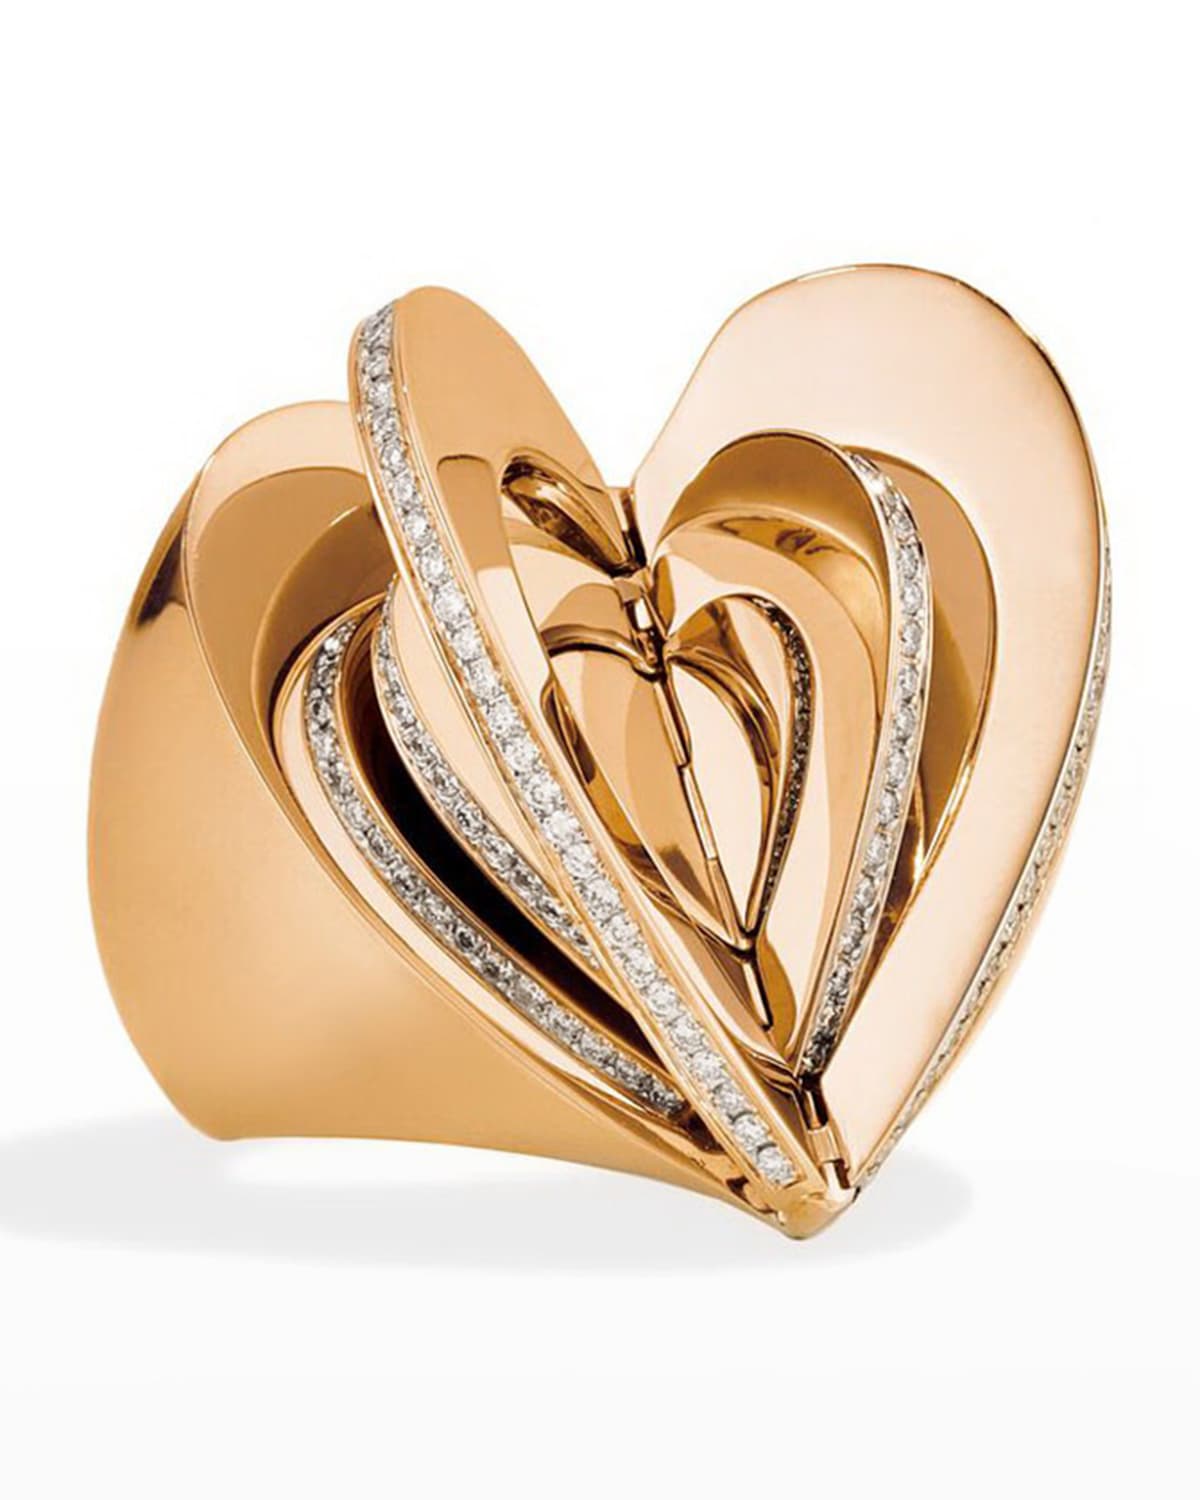 CADAR 18k Rose Gold Diamond Heart Ring, Size 7